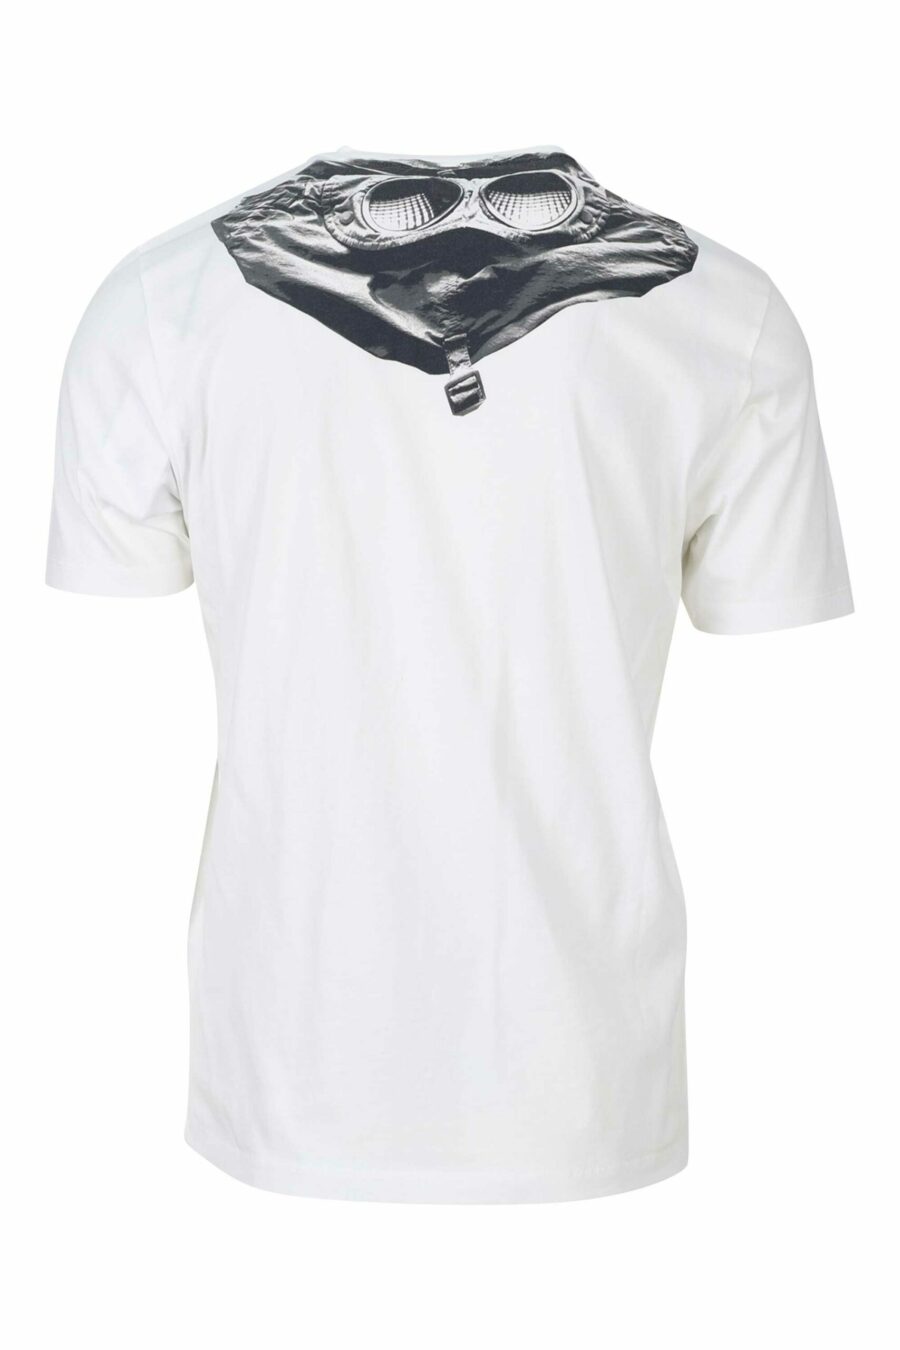 Weißes T-Shirt mit Kapuze und Logoaufnäher - 7620943570397 1 1 skaliert